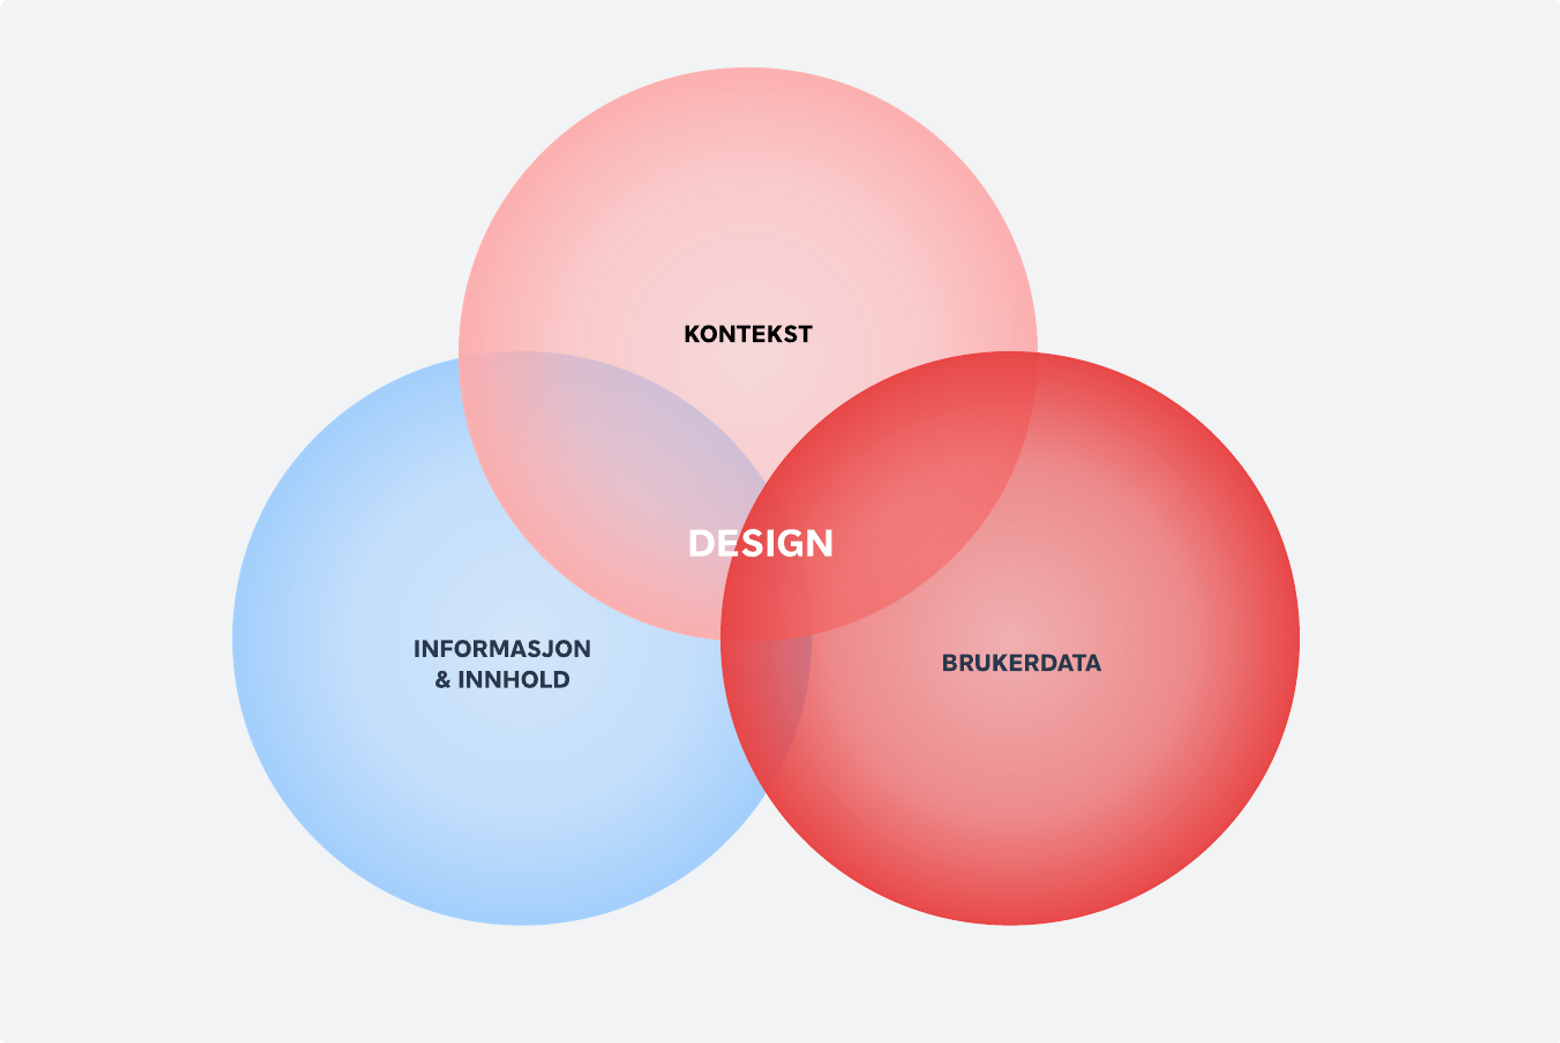 Illustrasjon som viser hvorfor designere trenger både brukerdata, kontekst og informasjon og innhold for å lage gode produkter